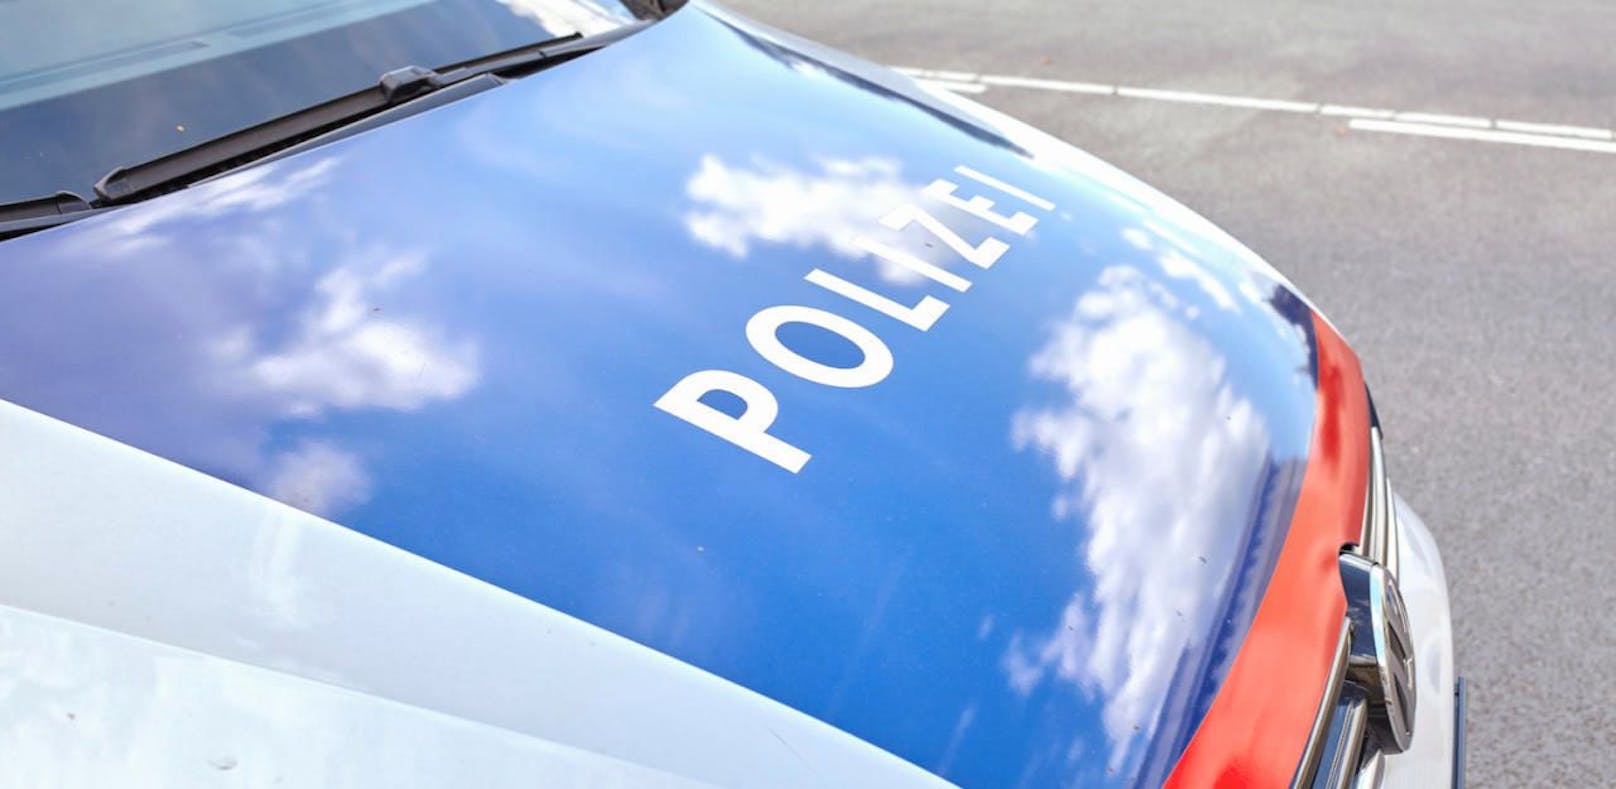 Laut Polizei waren einige Lenker im Bezirk Baden viel zu schnell unterwegs.